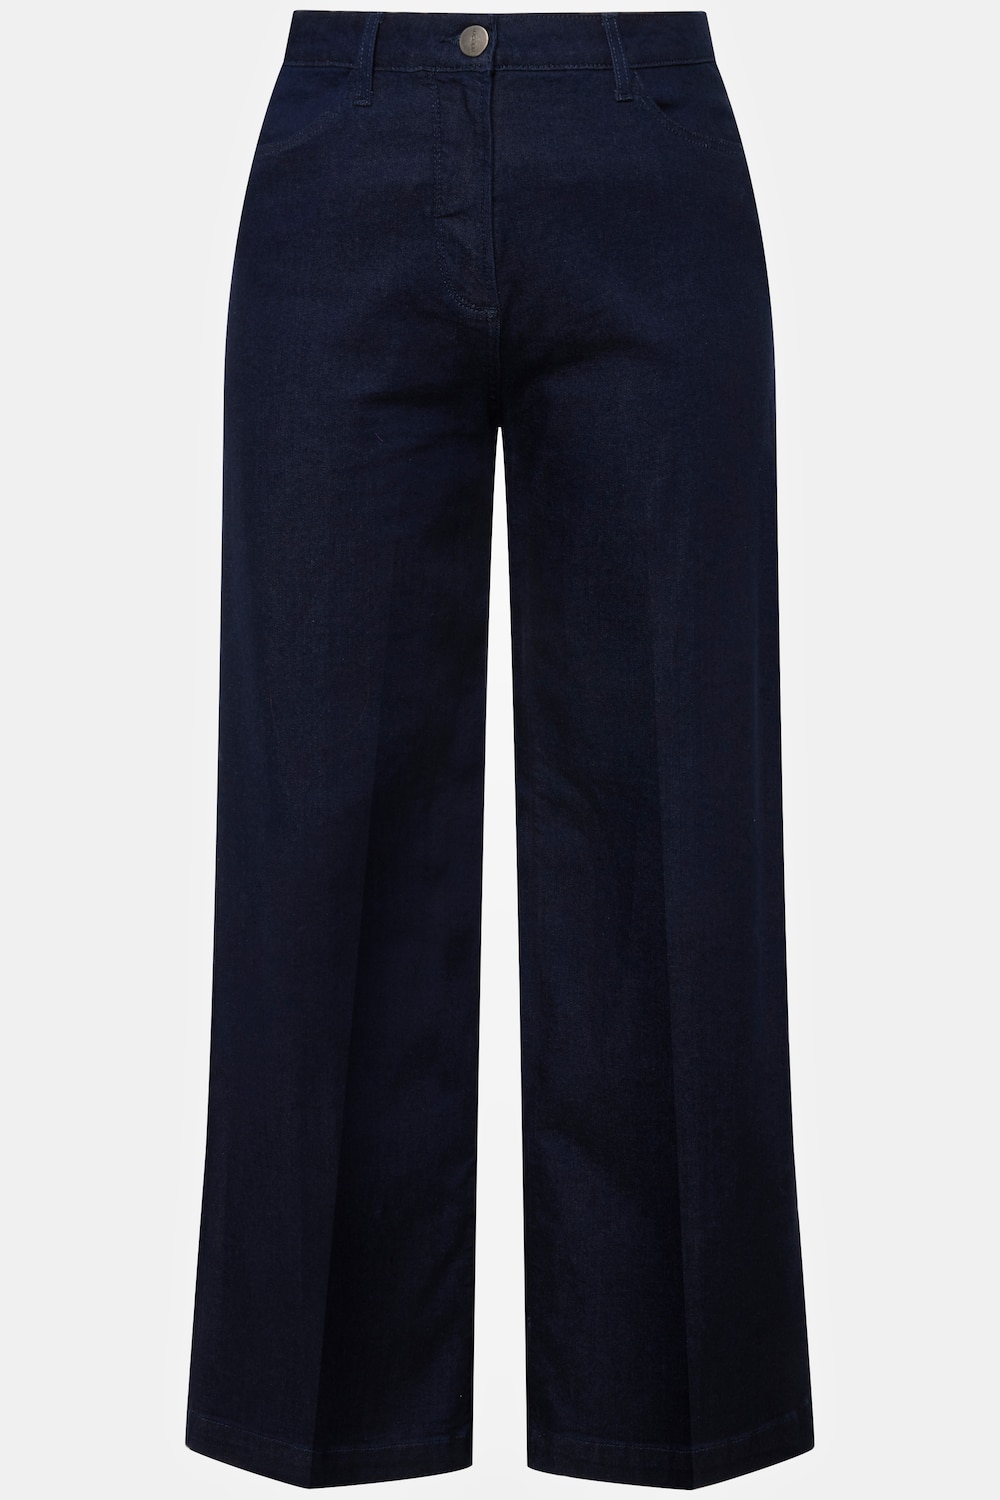 Grote Maten jeans, Dames, blauw, Maat: 22, Katoen, Ulla Popken